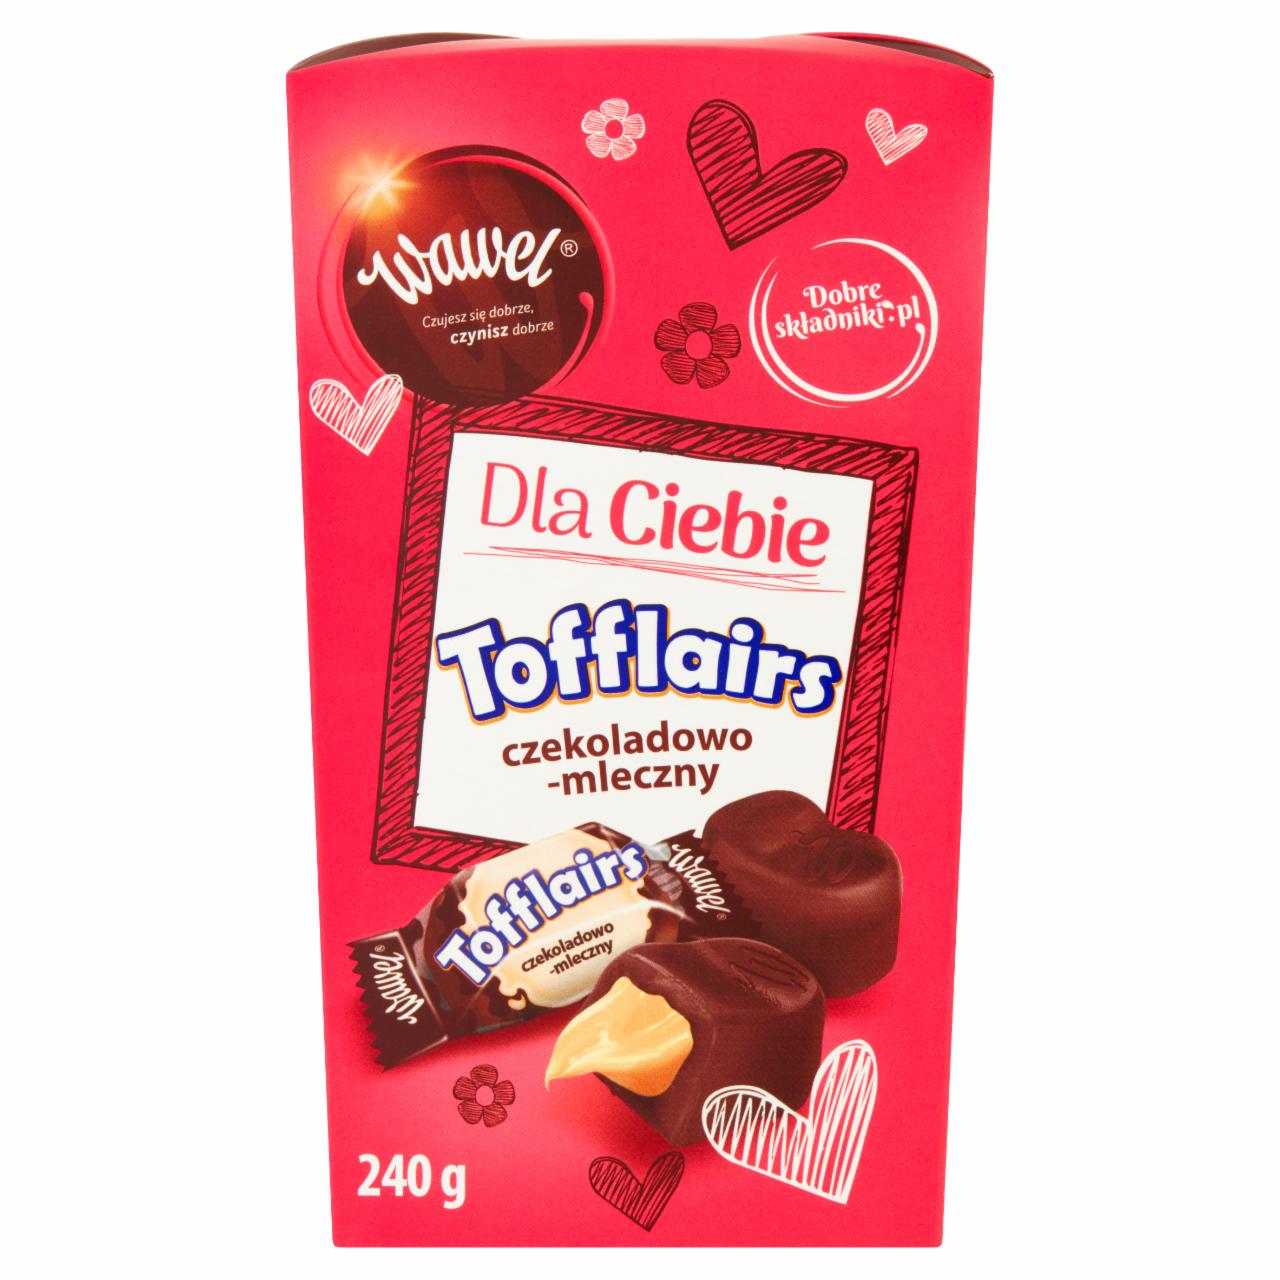 Zdjęcia - Wawel Tofflairs czekoladowo-mleczny Pomadki mleczne niekrystaliczne 240 g